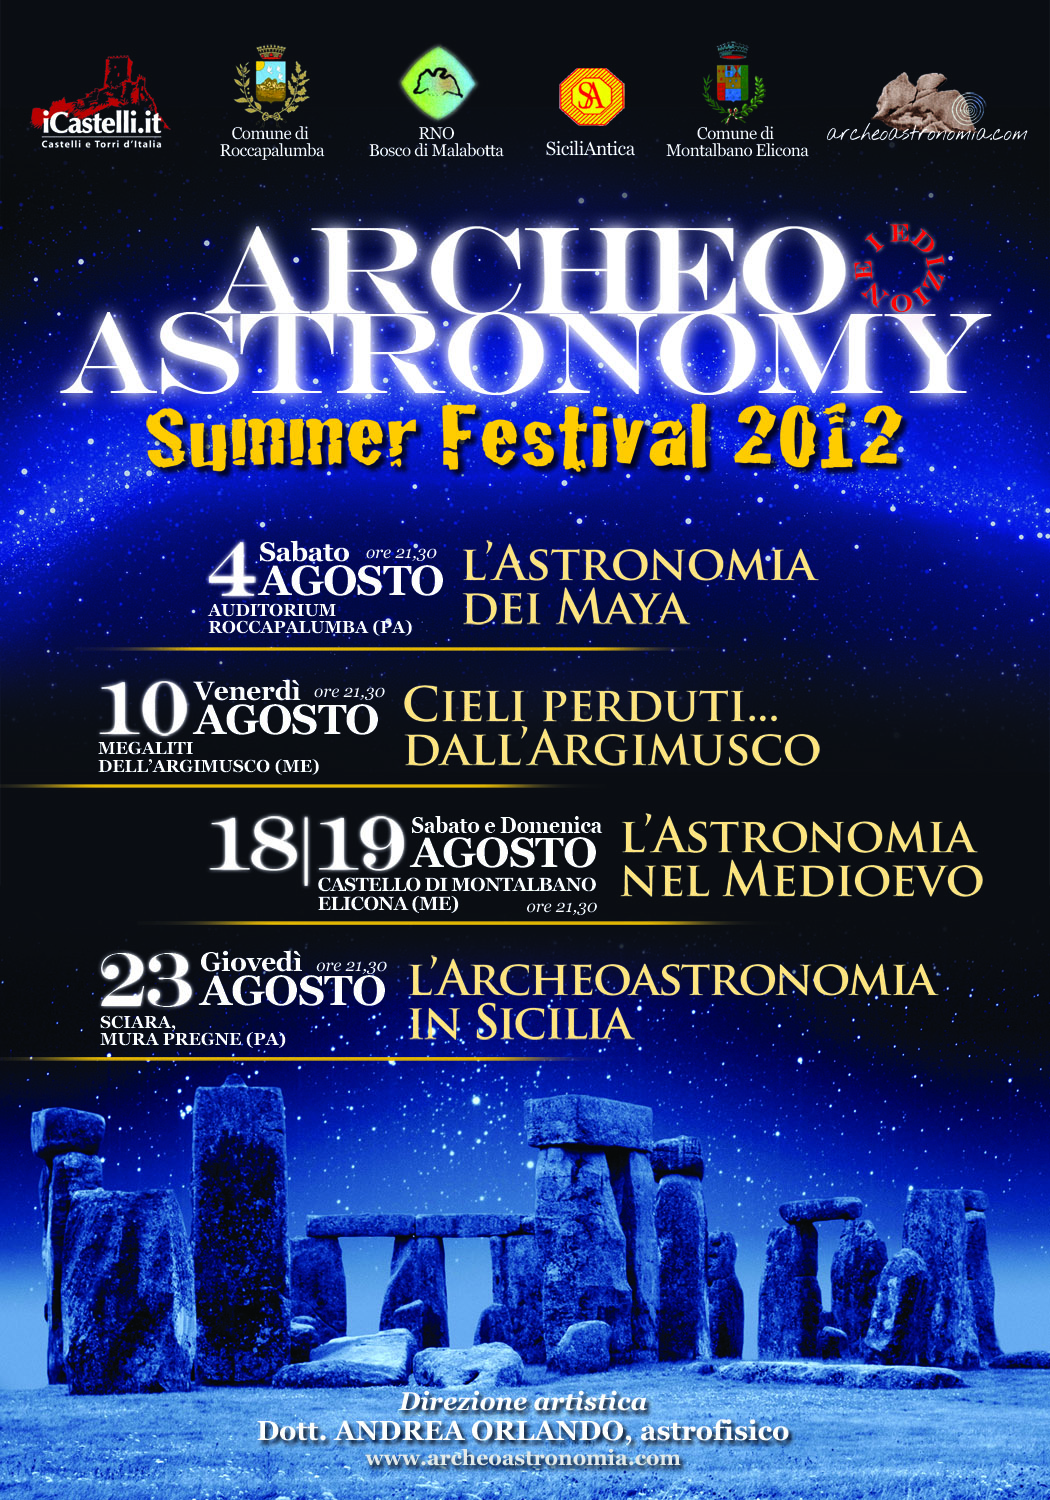 Festival di Archeoastronomia Pietre&Stelle, edizione 2012